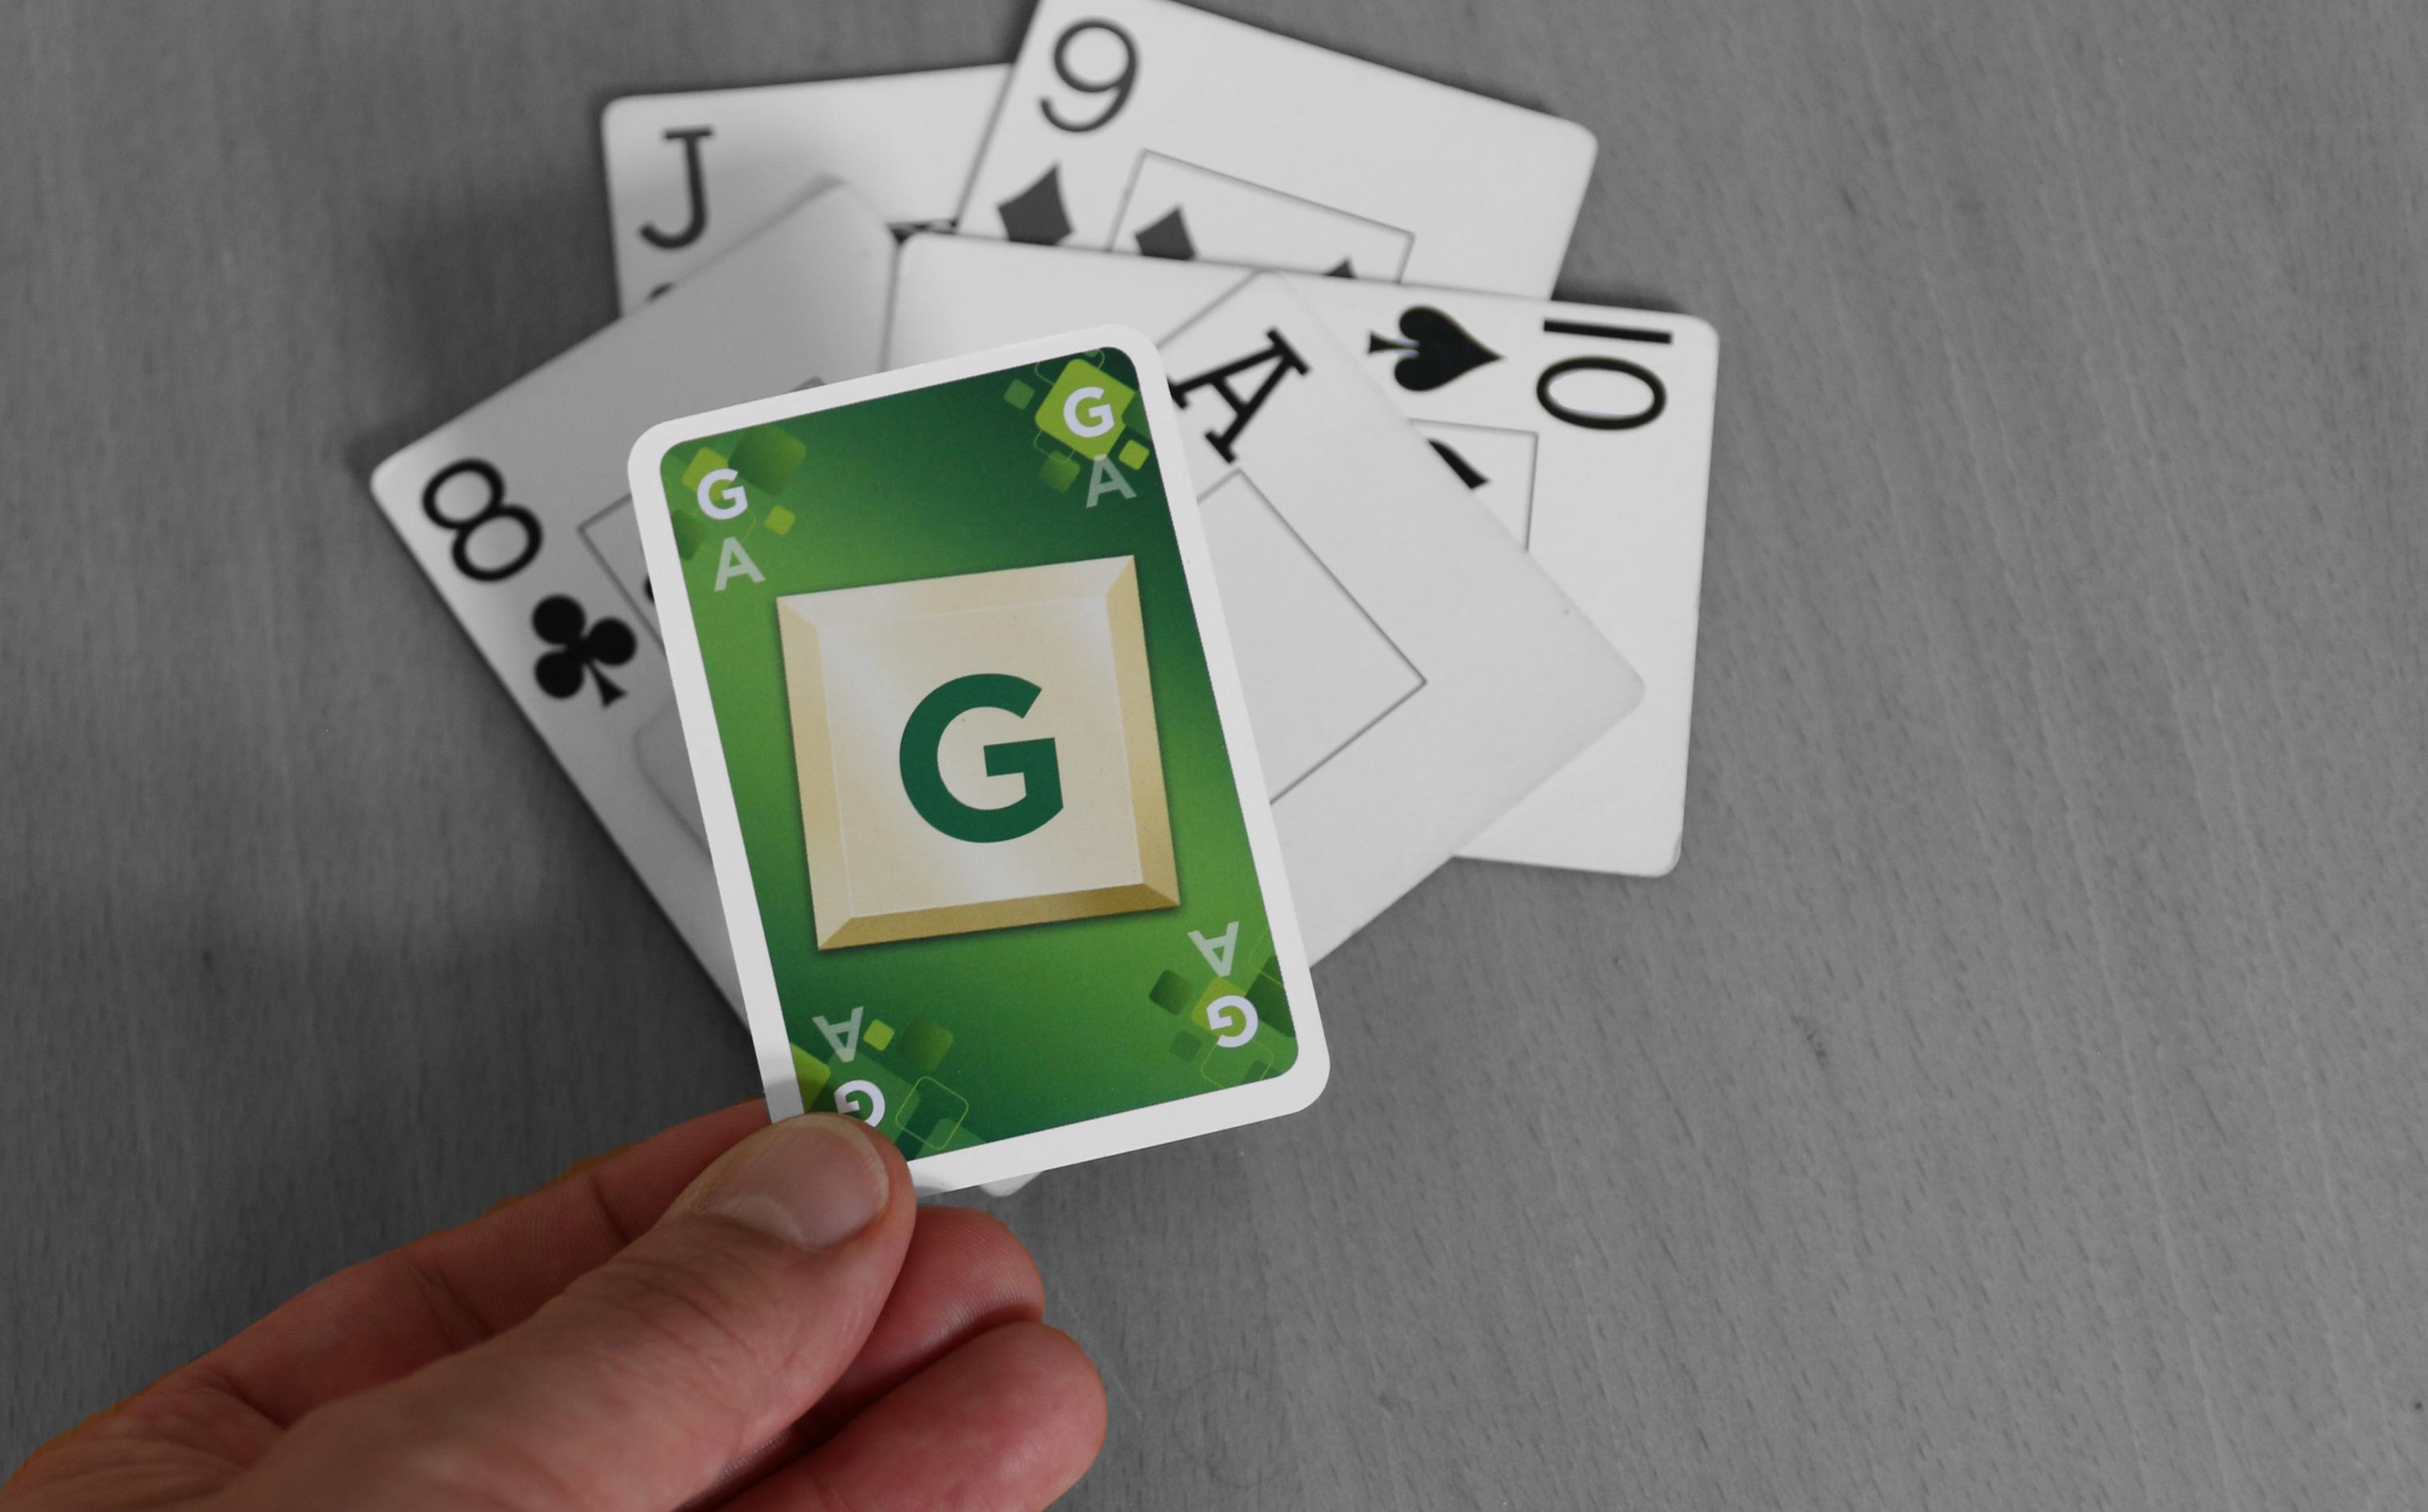 Auf einen Tisch liegen fünf Spielkarten. Eine Hand legt eine sechste Karte darauf. Sie gehört aber nicht zu einem normalen Kartenspiel, sondern ist leuchtend grün und zeigt ein großes G. Die Tischoberfläche und die Karten darauf sind hingegen in schwarz-weiß gehalten. – Ein grüner Trumpf für einen grauen Stich.